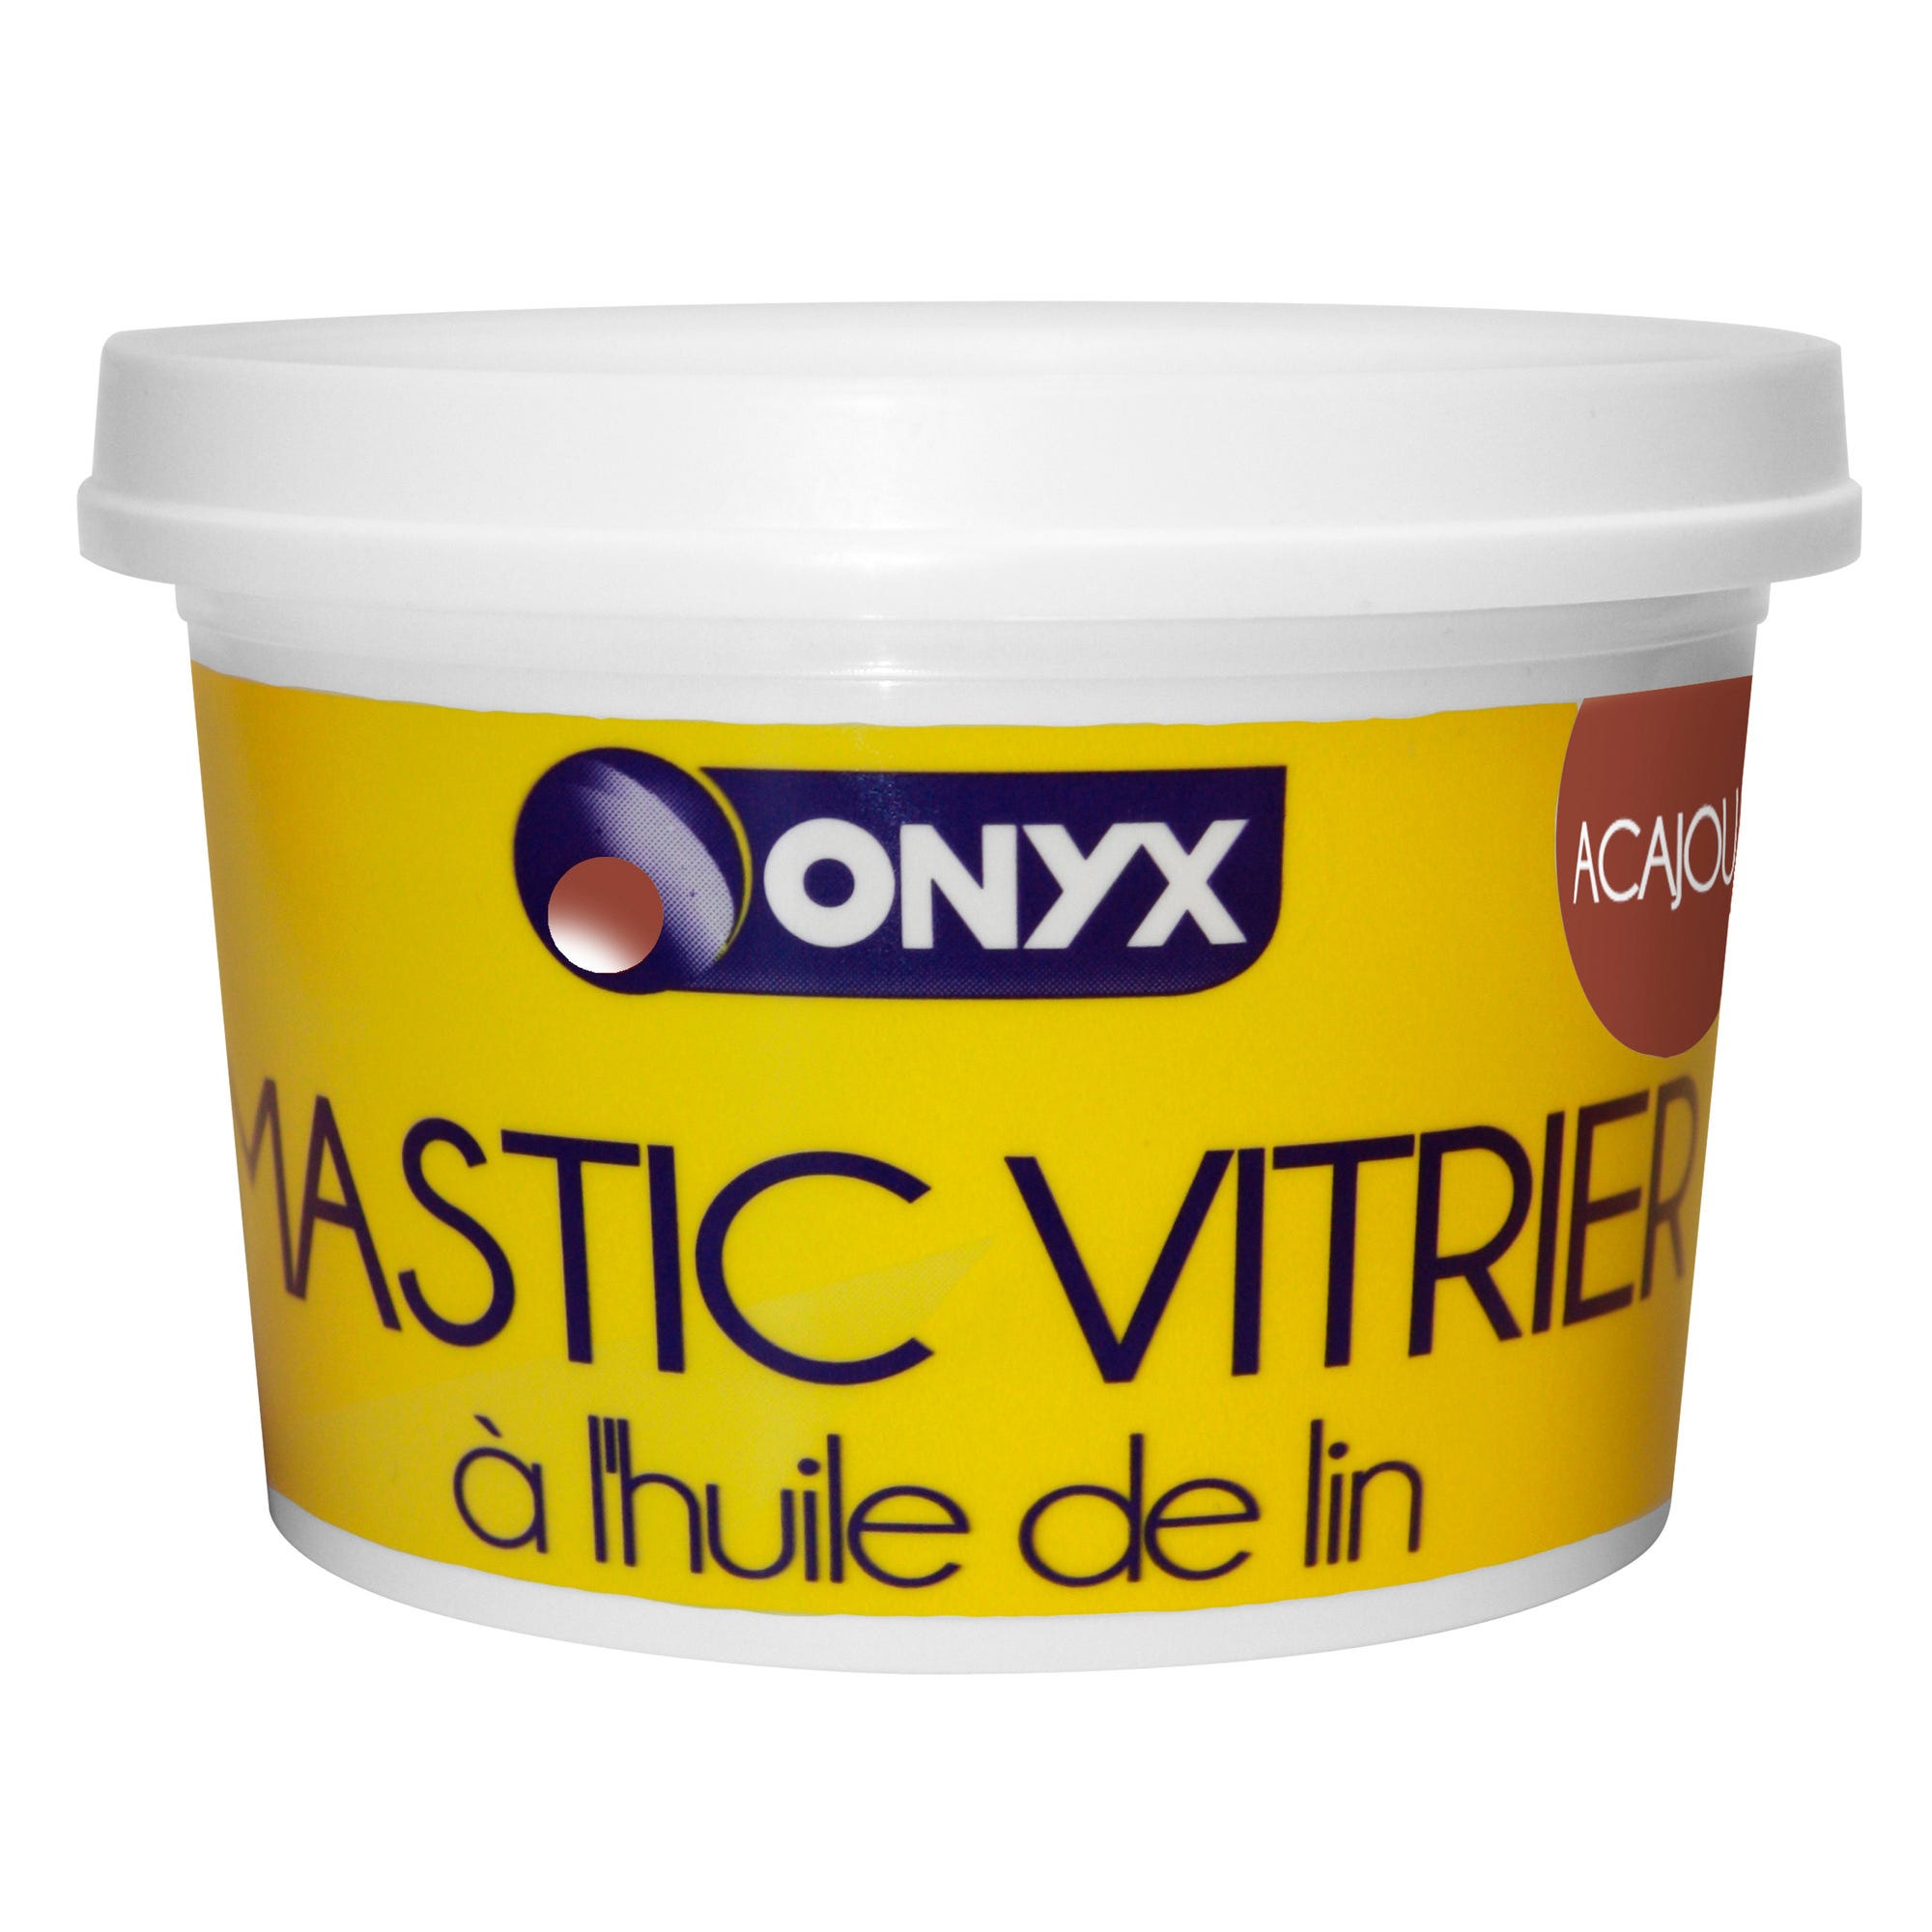 Mastic vitrier à huile de lin acajou 1 kg - ONYX 0